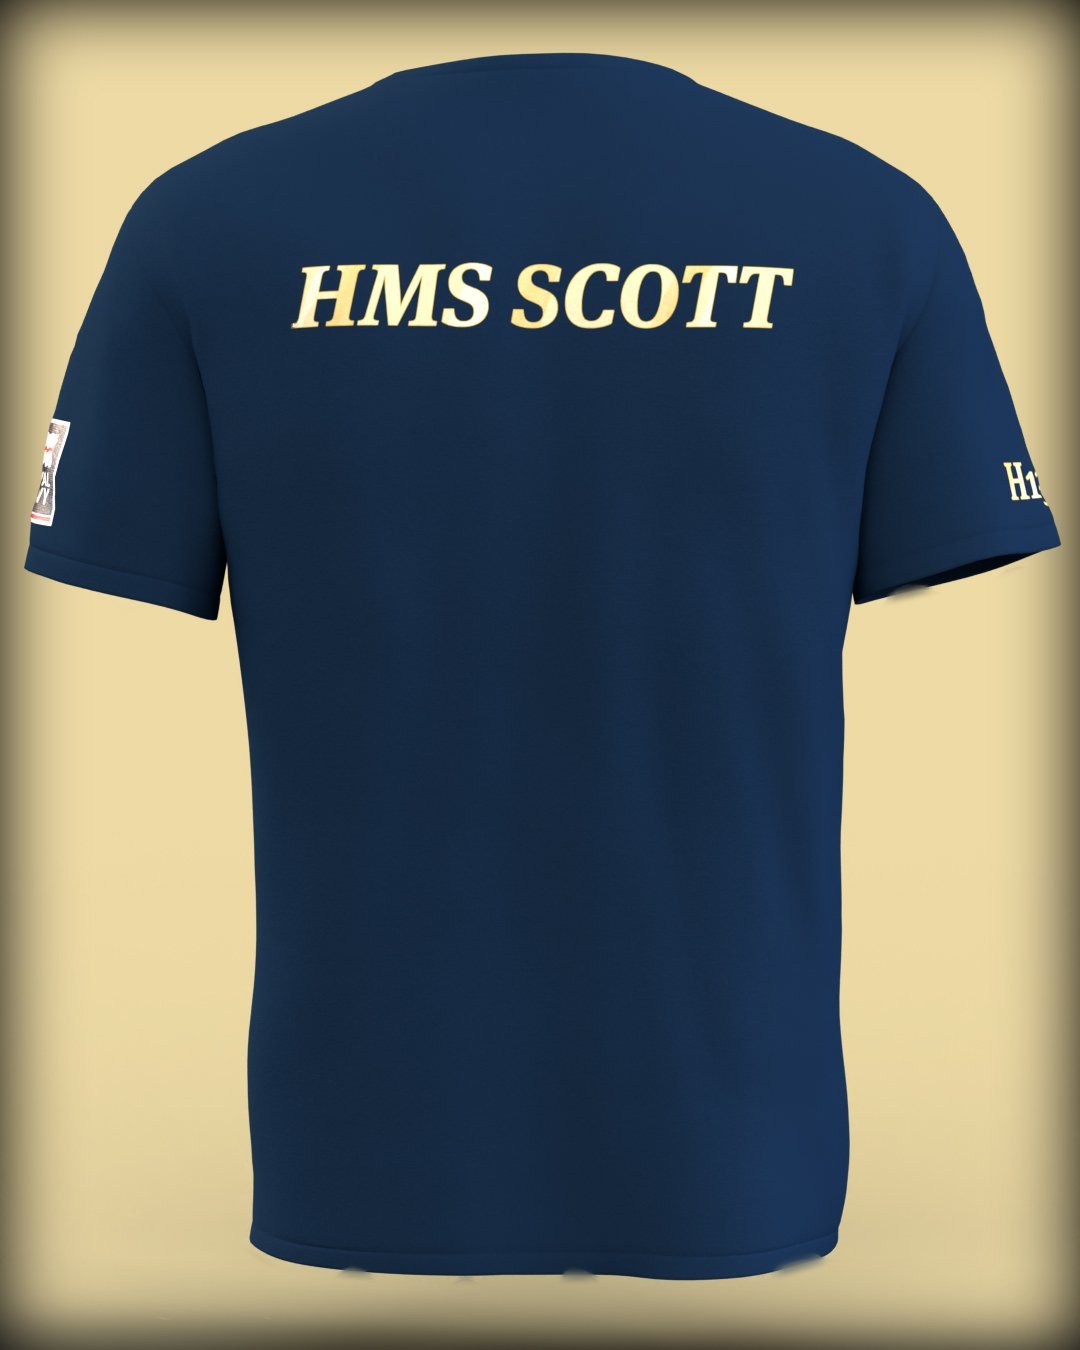 HMS Scott Crest on Navy Blue Tee (Customisable) - Cleekers